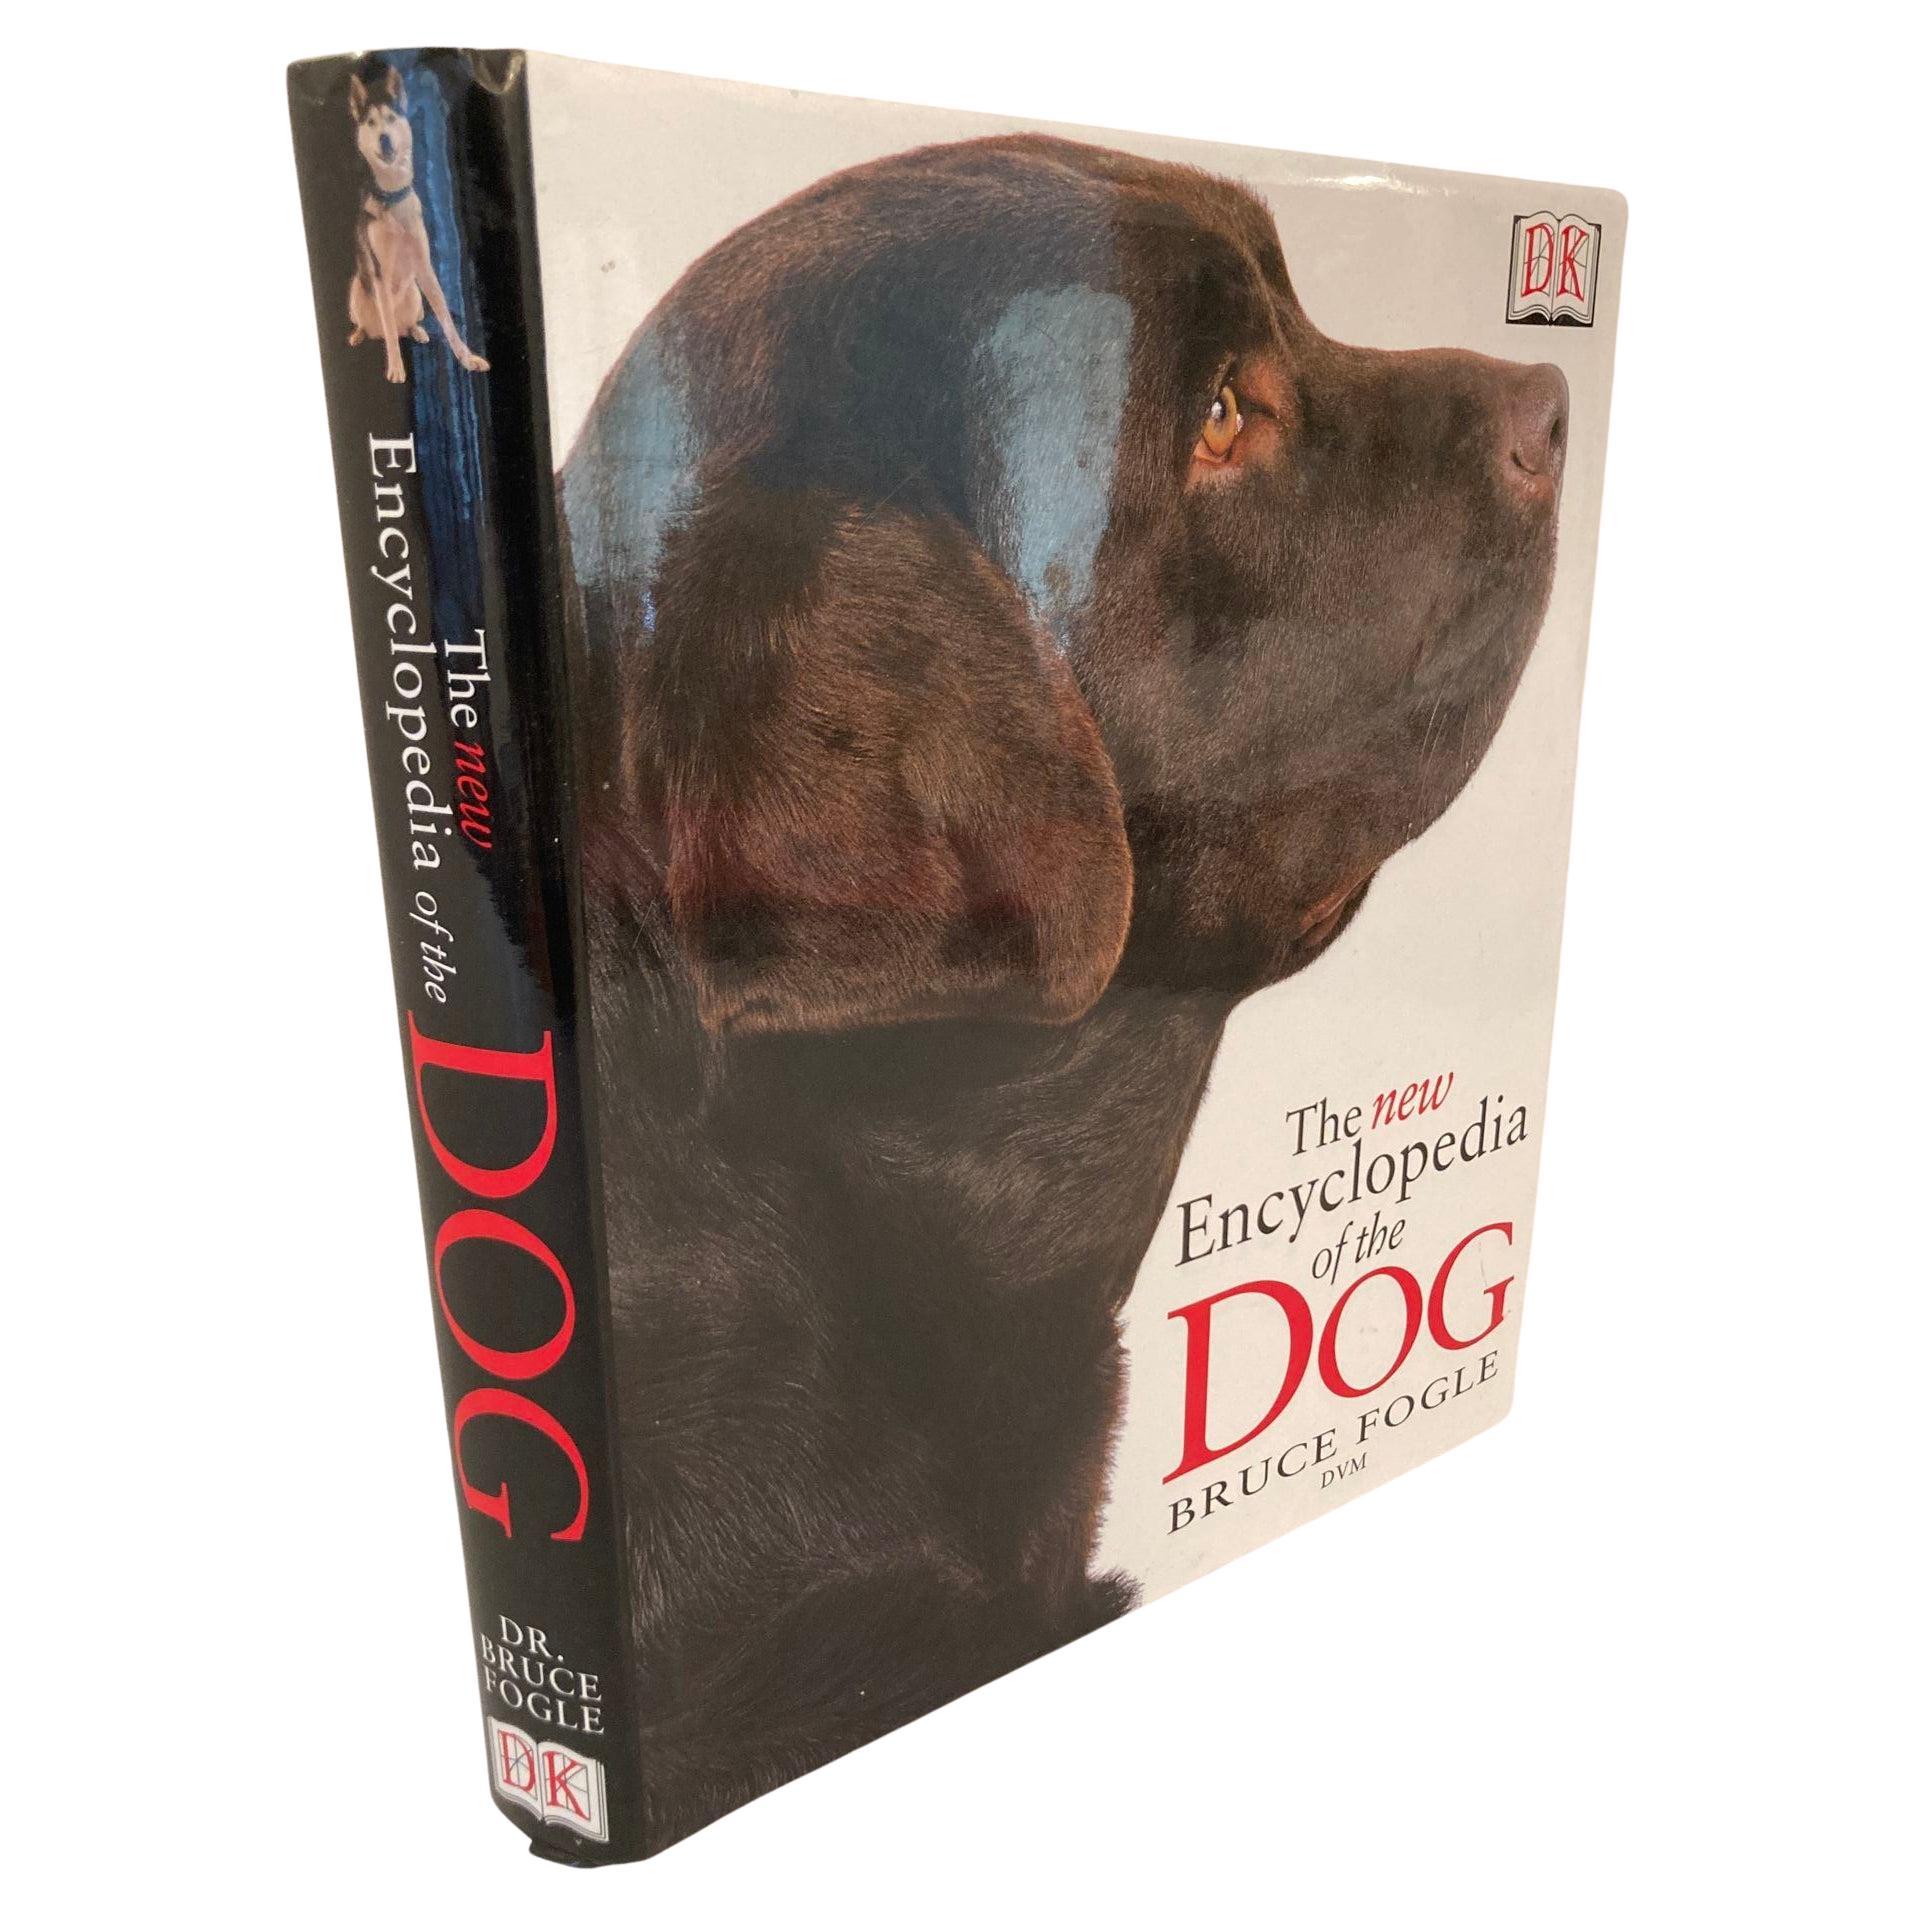 New Encyclopedia of Dog Livre à couverture rigide de Bruce Fogle